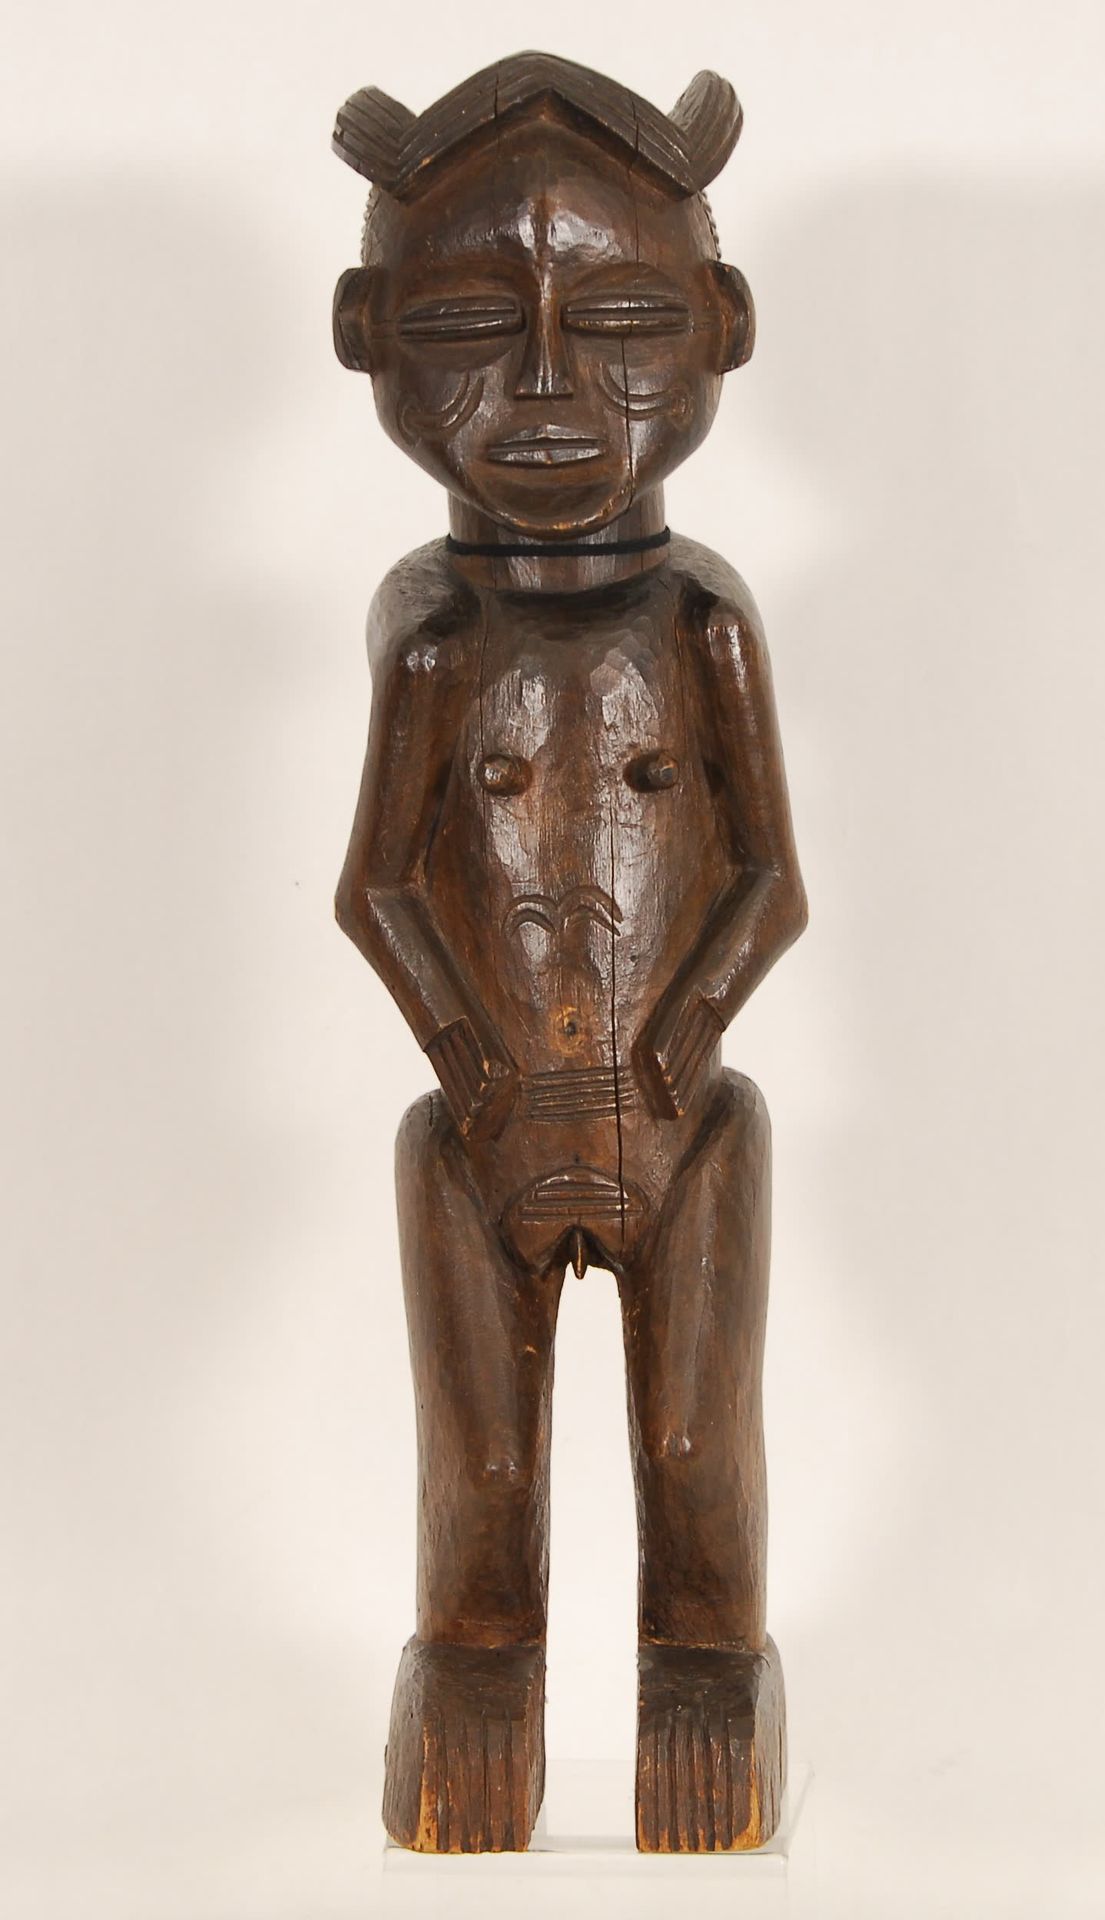 Afrique - Africa Statuetta
Legno intagliato, Angola.
H. 48 cm.